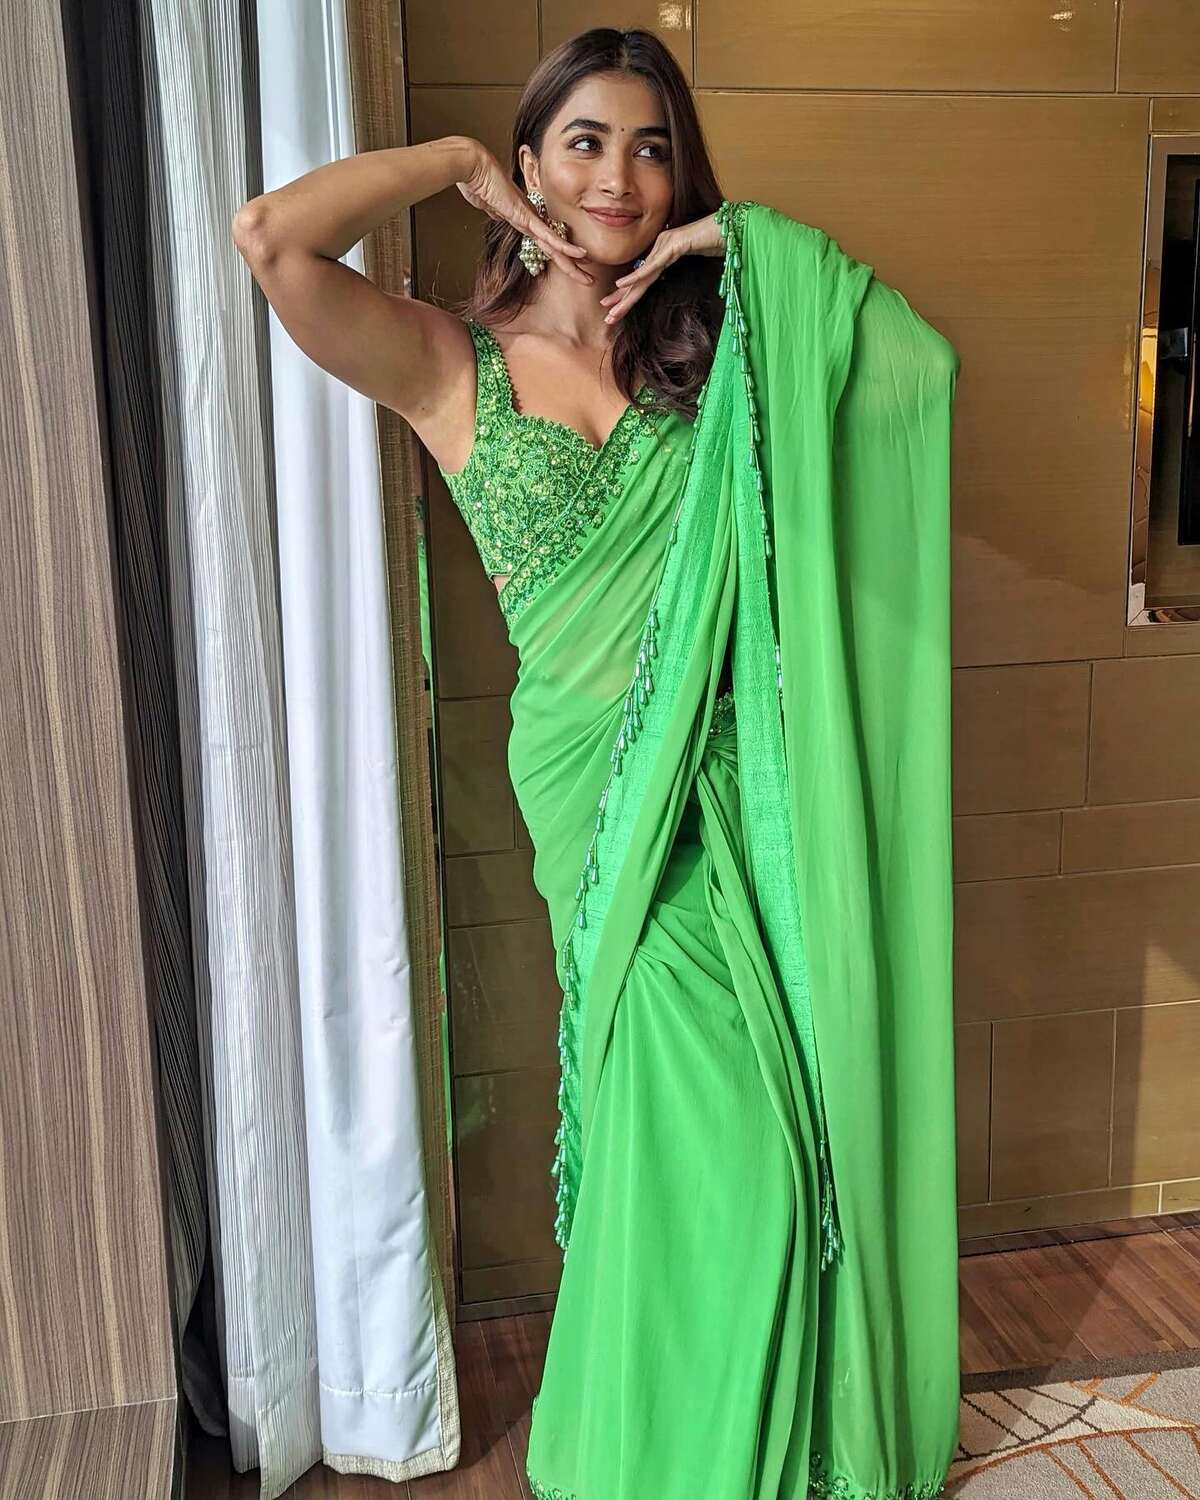 Pooja hegde in green saree clicks